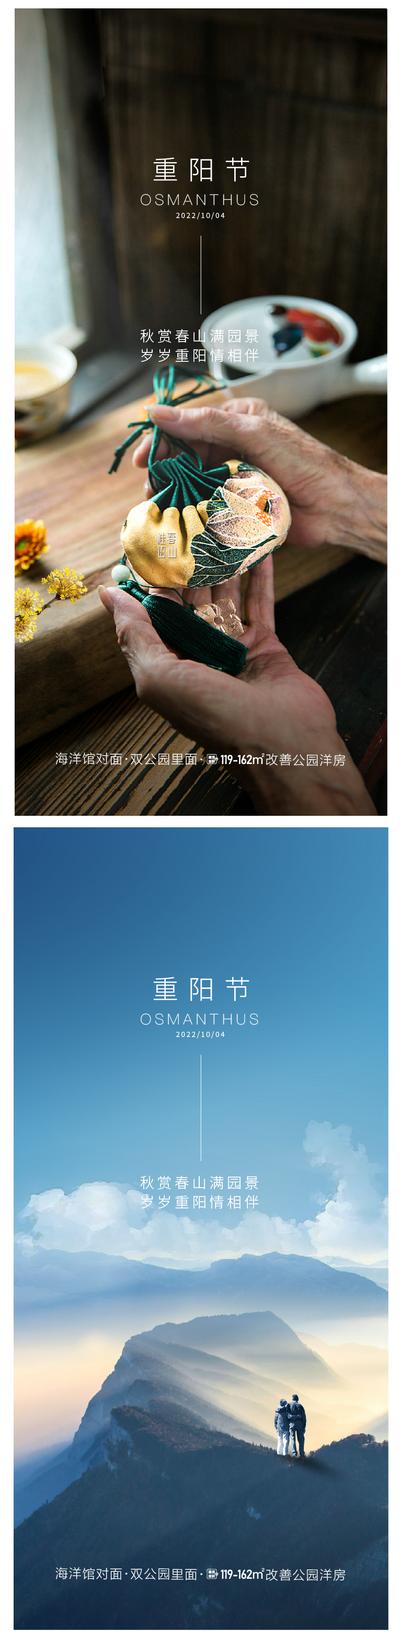 南门网 广告 海报 节日 重阳节 山水 老人 背影 系列